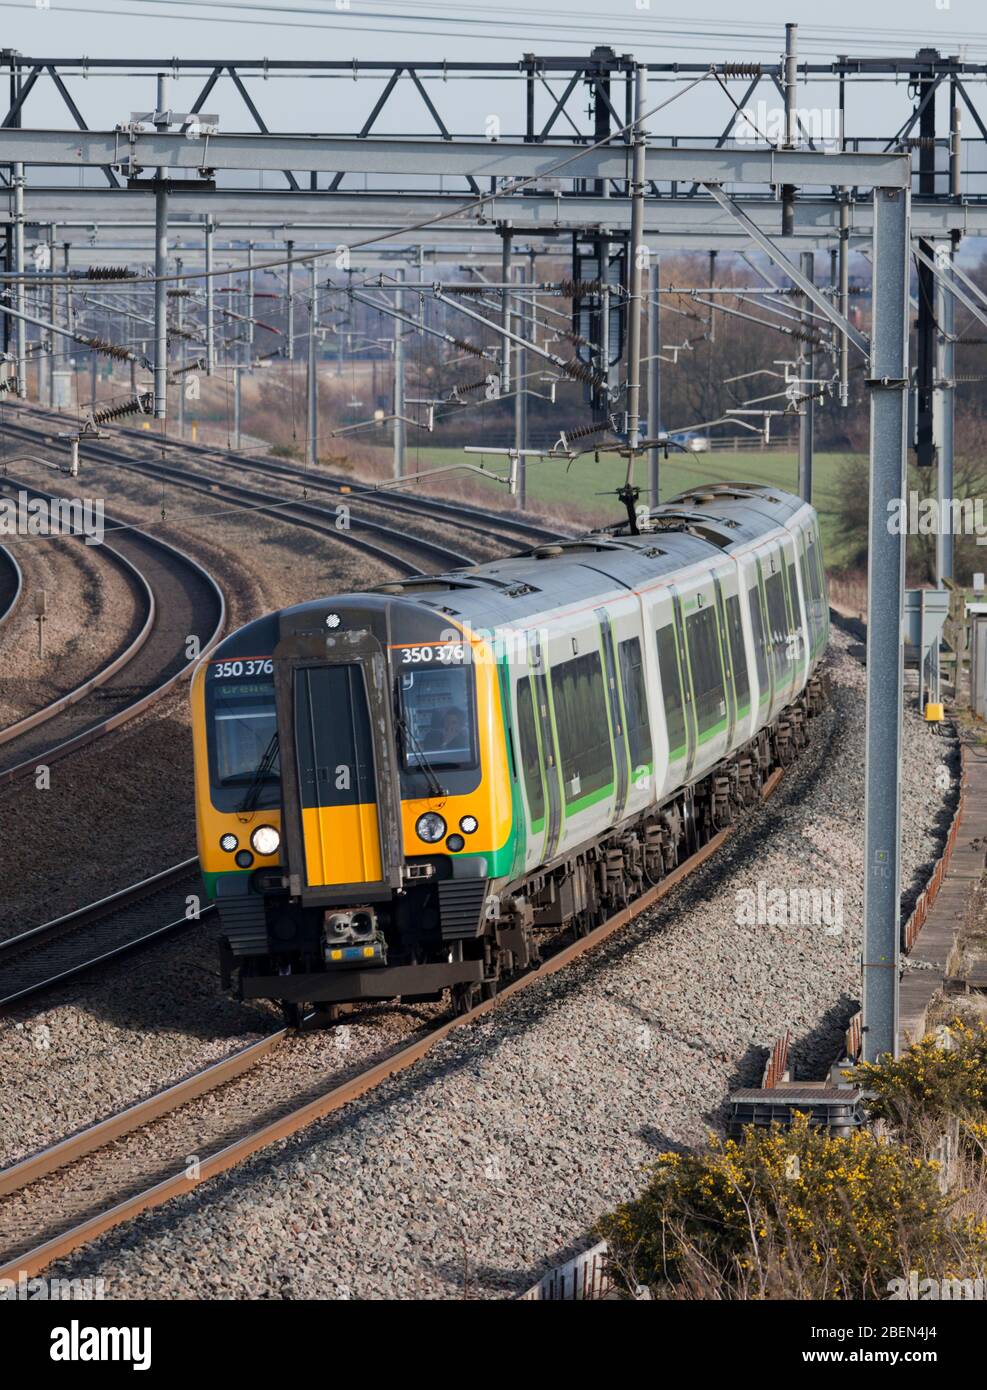 Londra Midland Siemens Desiro treno di classe 350 sulla linea principale della costa occidentale a 4 piste nella valle di Trent, Regno Unito, con un locale tutte le stazioni fermano treno Foto Stock